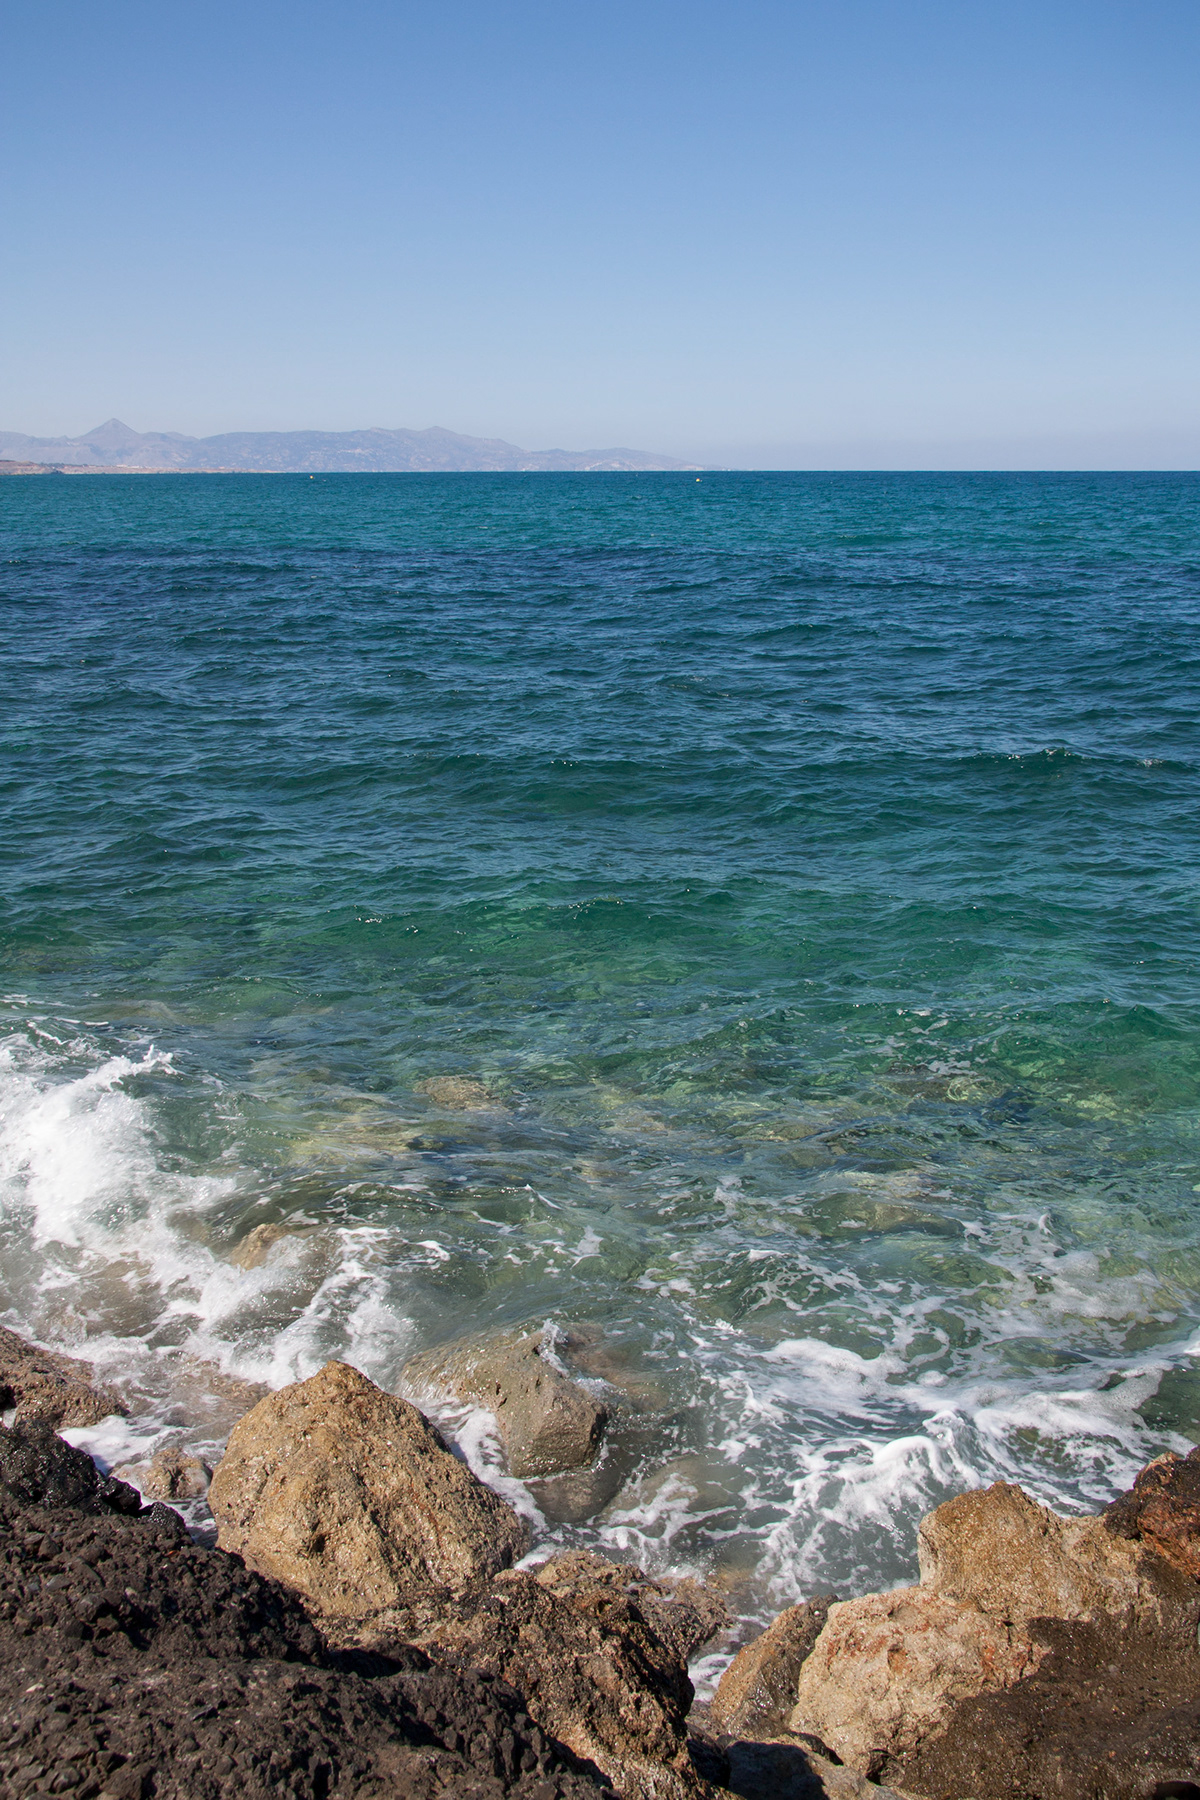 creta Crete Greece Grecia Travel vacation viajes mediterranean sea Ocean beach ruin minoan boat